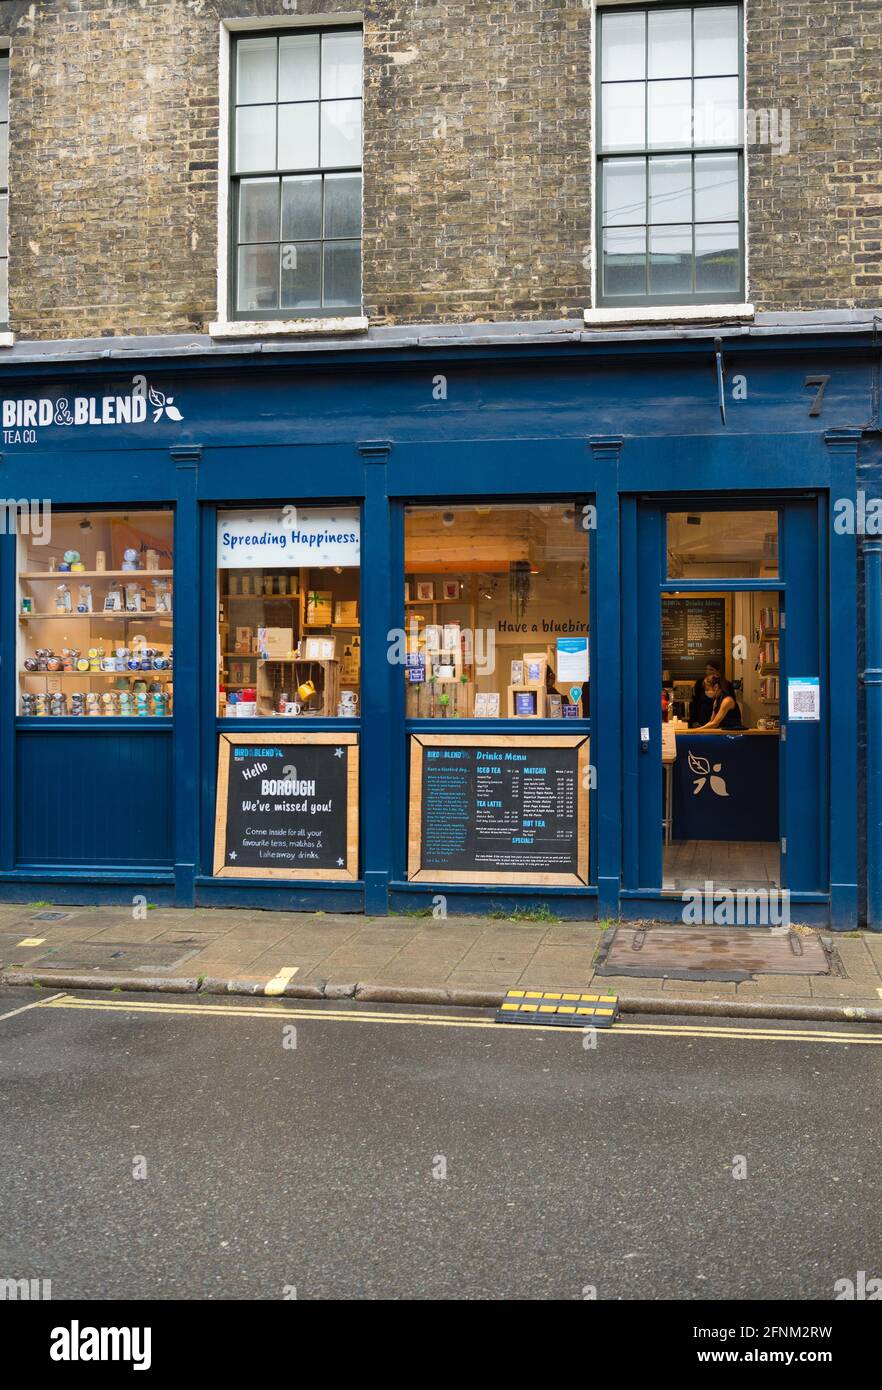 Bird & Blend Tea Company. Une boutique spécialisée vendant une large gamme  de thés. Park Street, près de Borough Market, Londres, Angleterre,  Royaume-Uni Photo Stock - Alamy